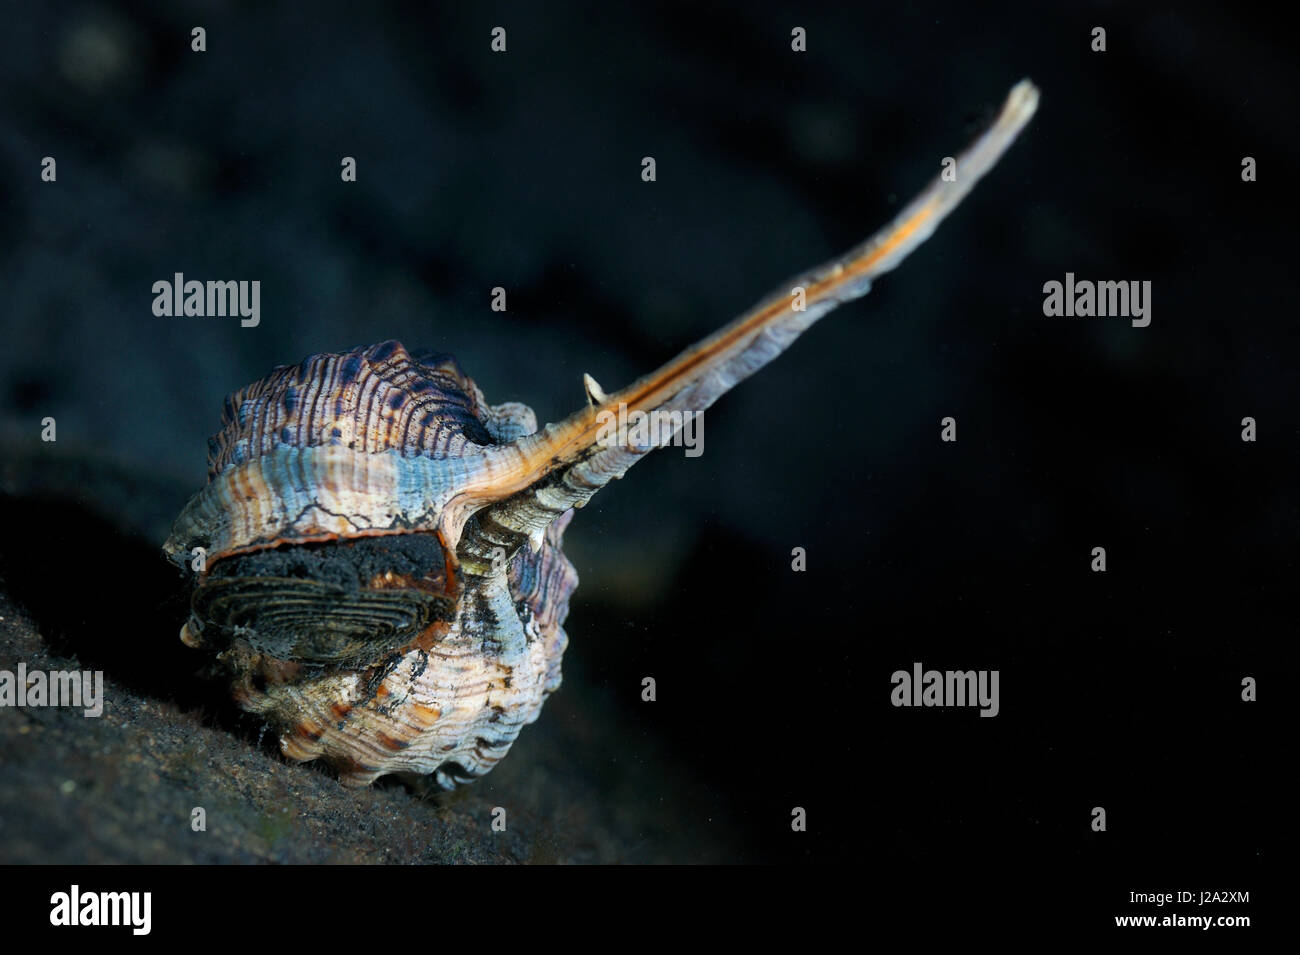 Die Cochlea der Snipe Rechnung Murex-Meeresschnecke hat eine sehr Spitze, die typisch für diese Spezies ist Stockfoto